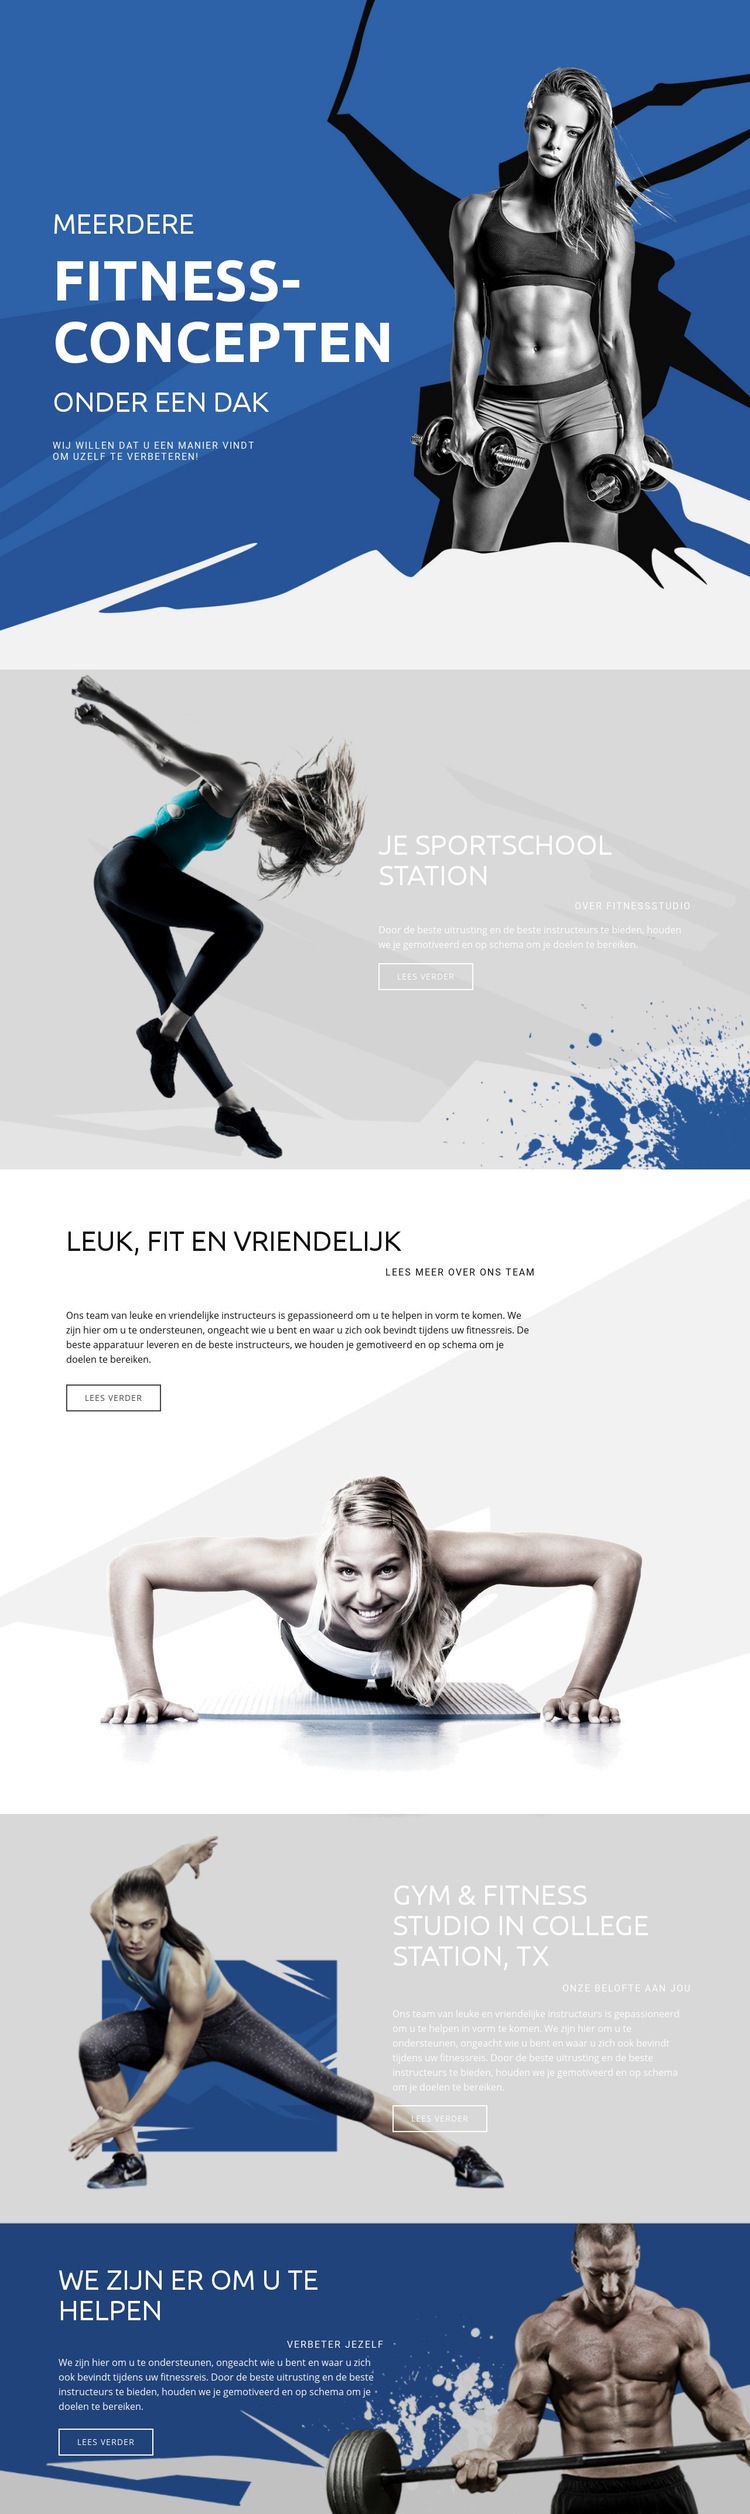 Beste fitness en sport Website ontwerp